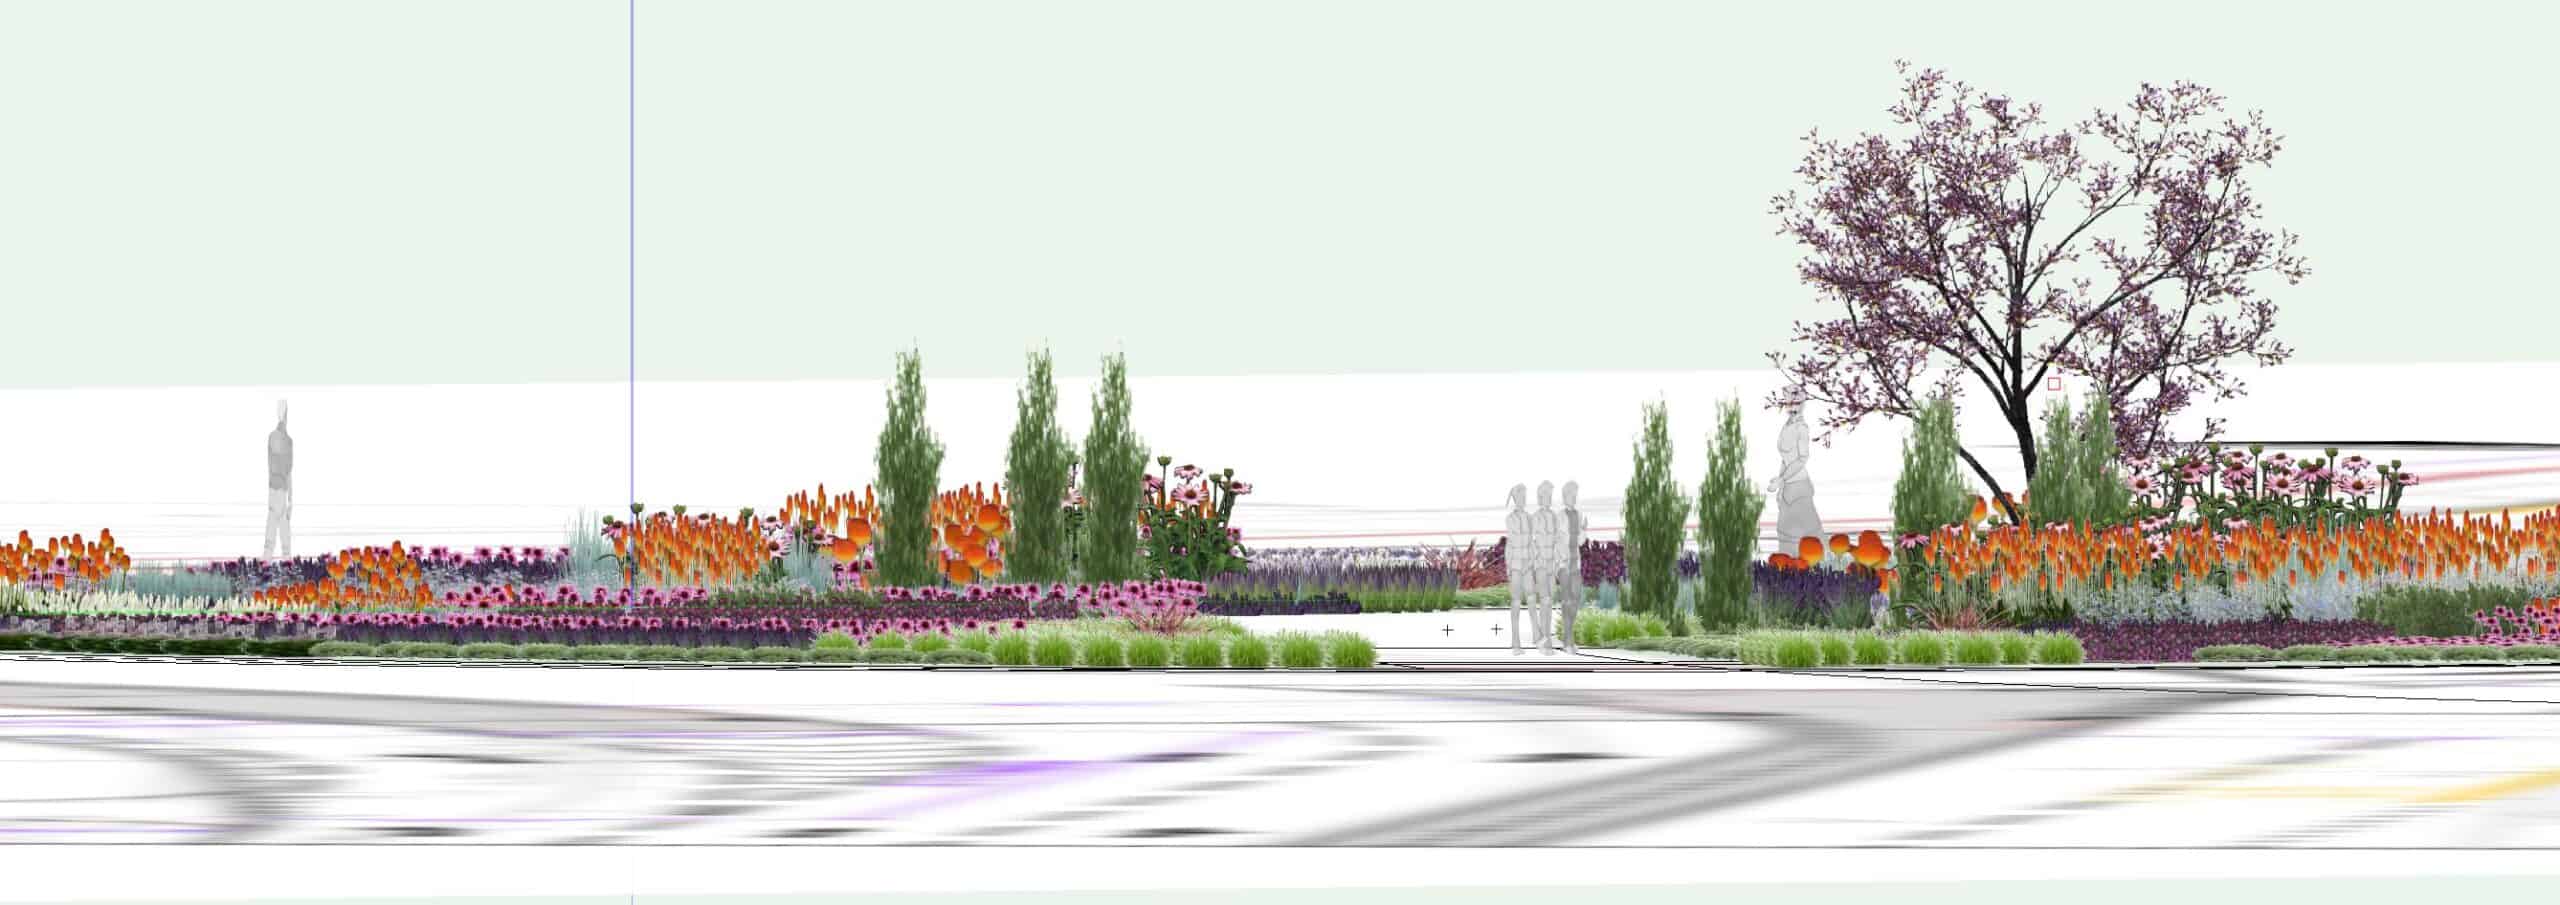 render of Bedfordshire landscape design for roundabout